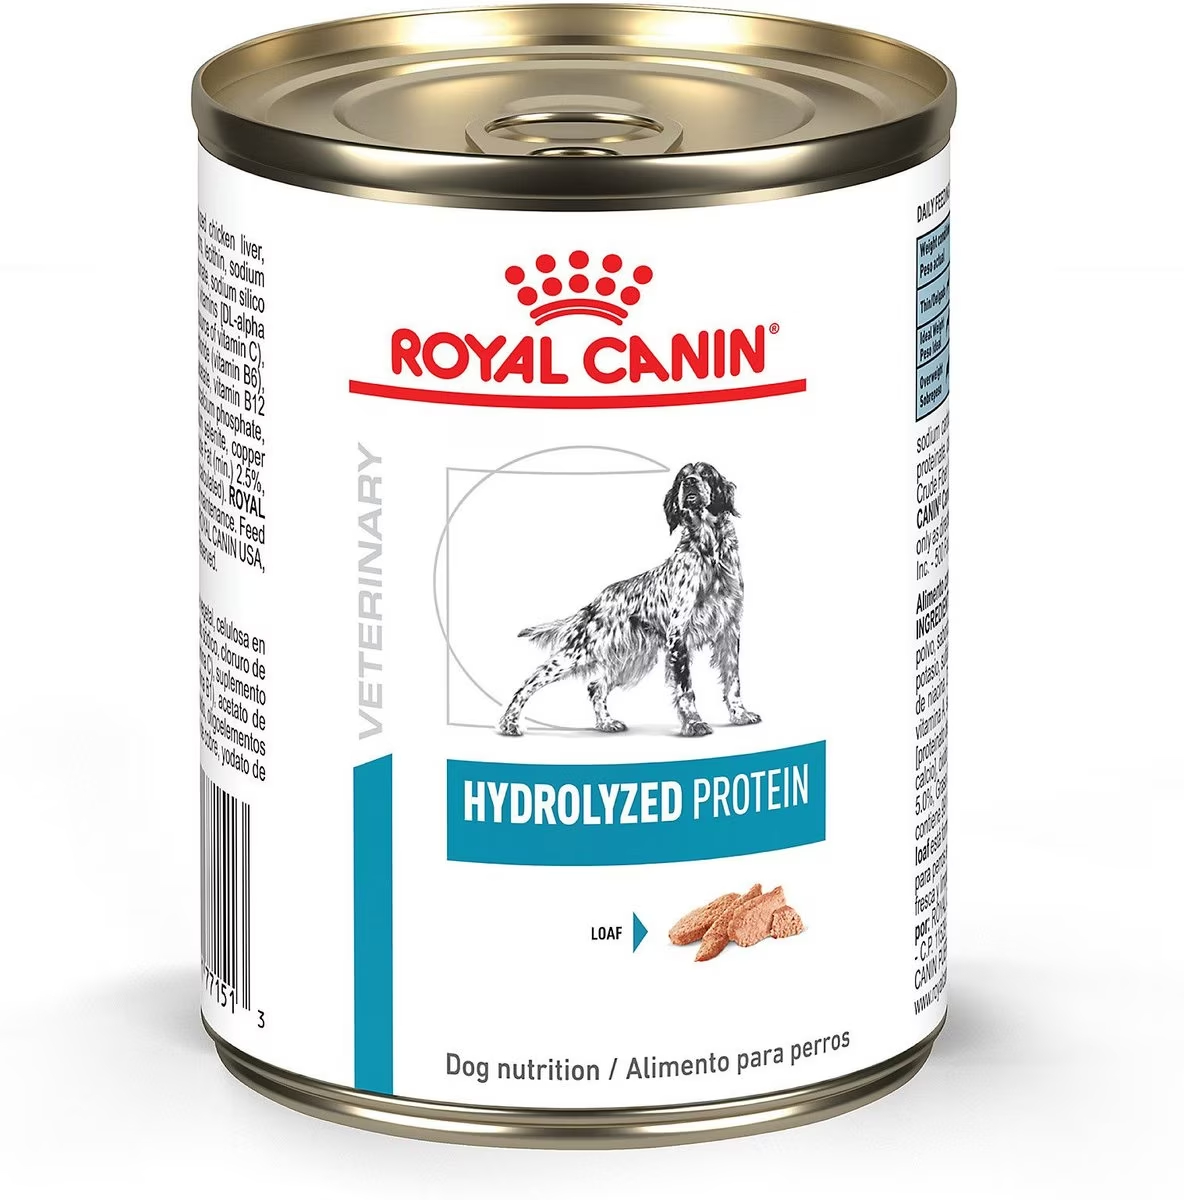 Royal Canin Hydrolyzed Protein Wet Dog Food